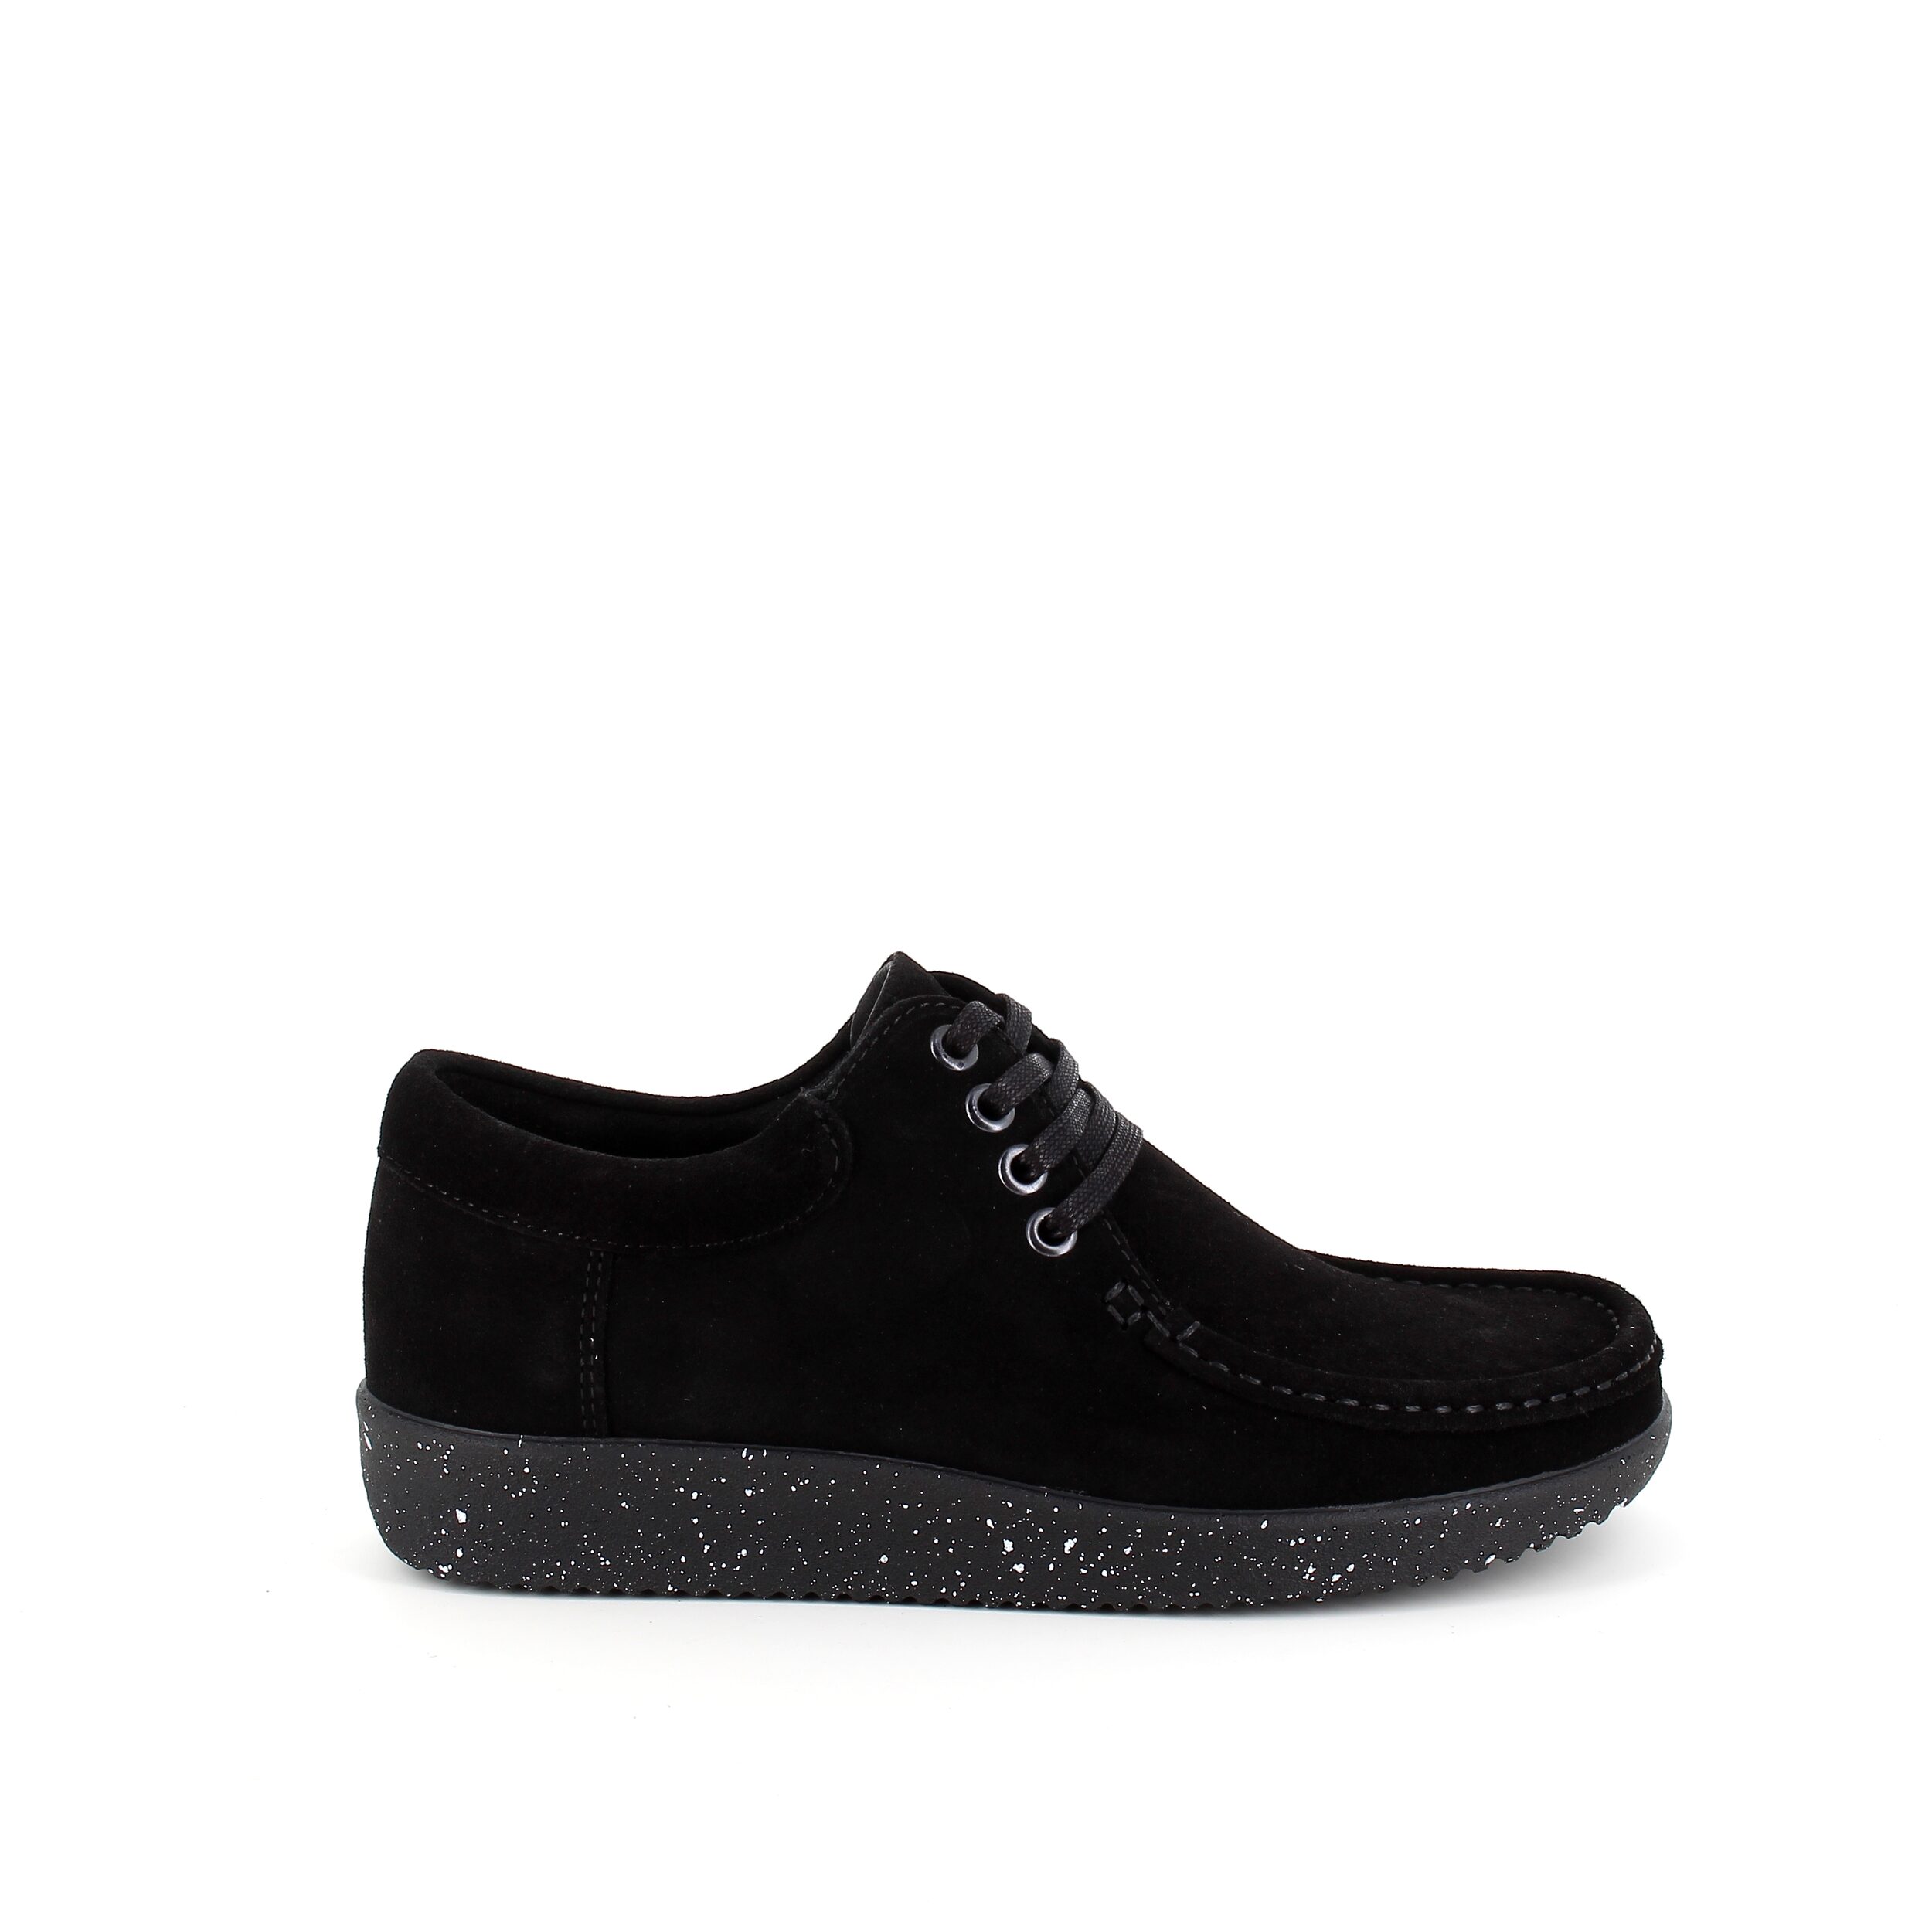 Se Nature sko i sort ruskind med hvide nister i sålen - 38 hos Sygeplejebutikken.dk